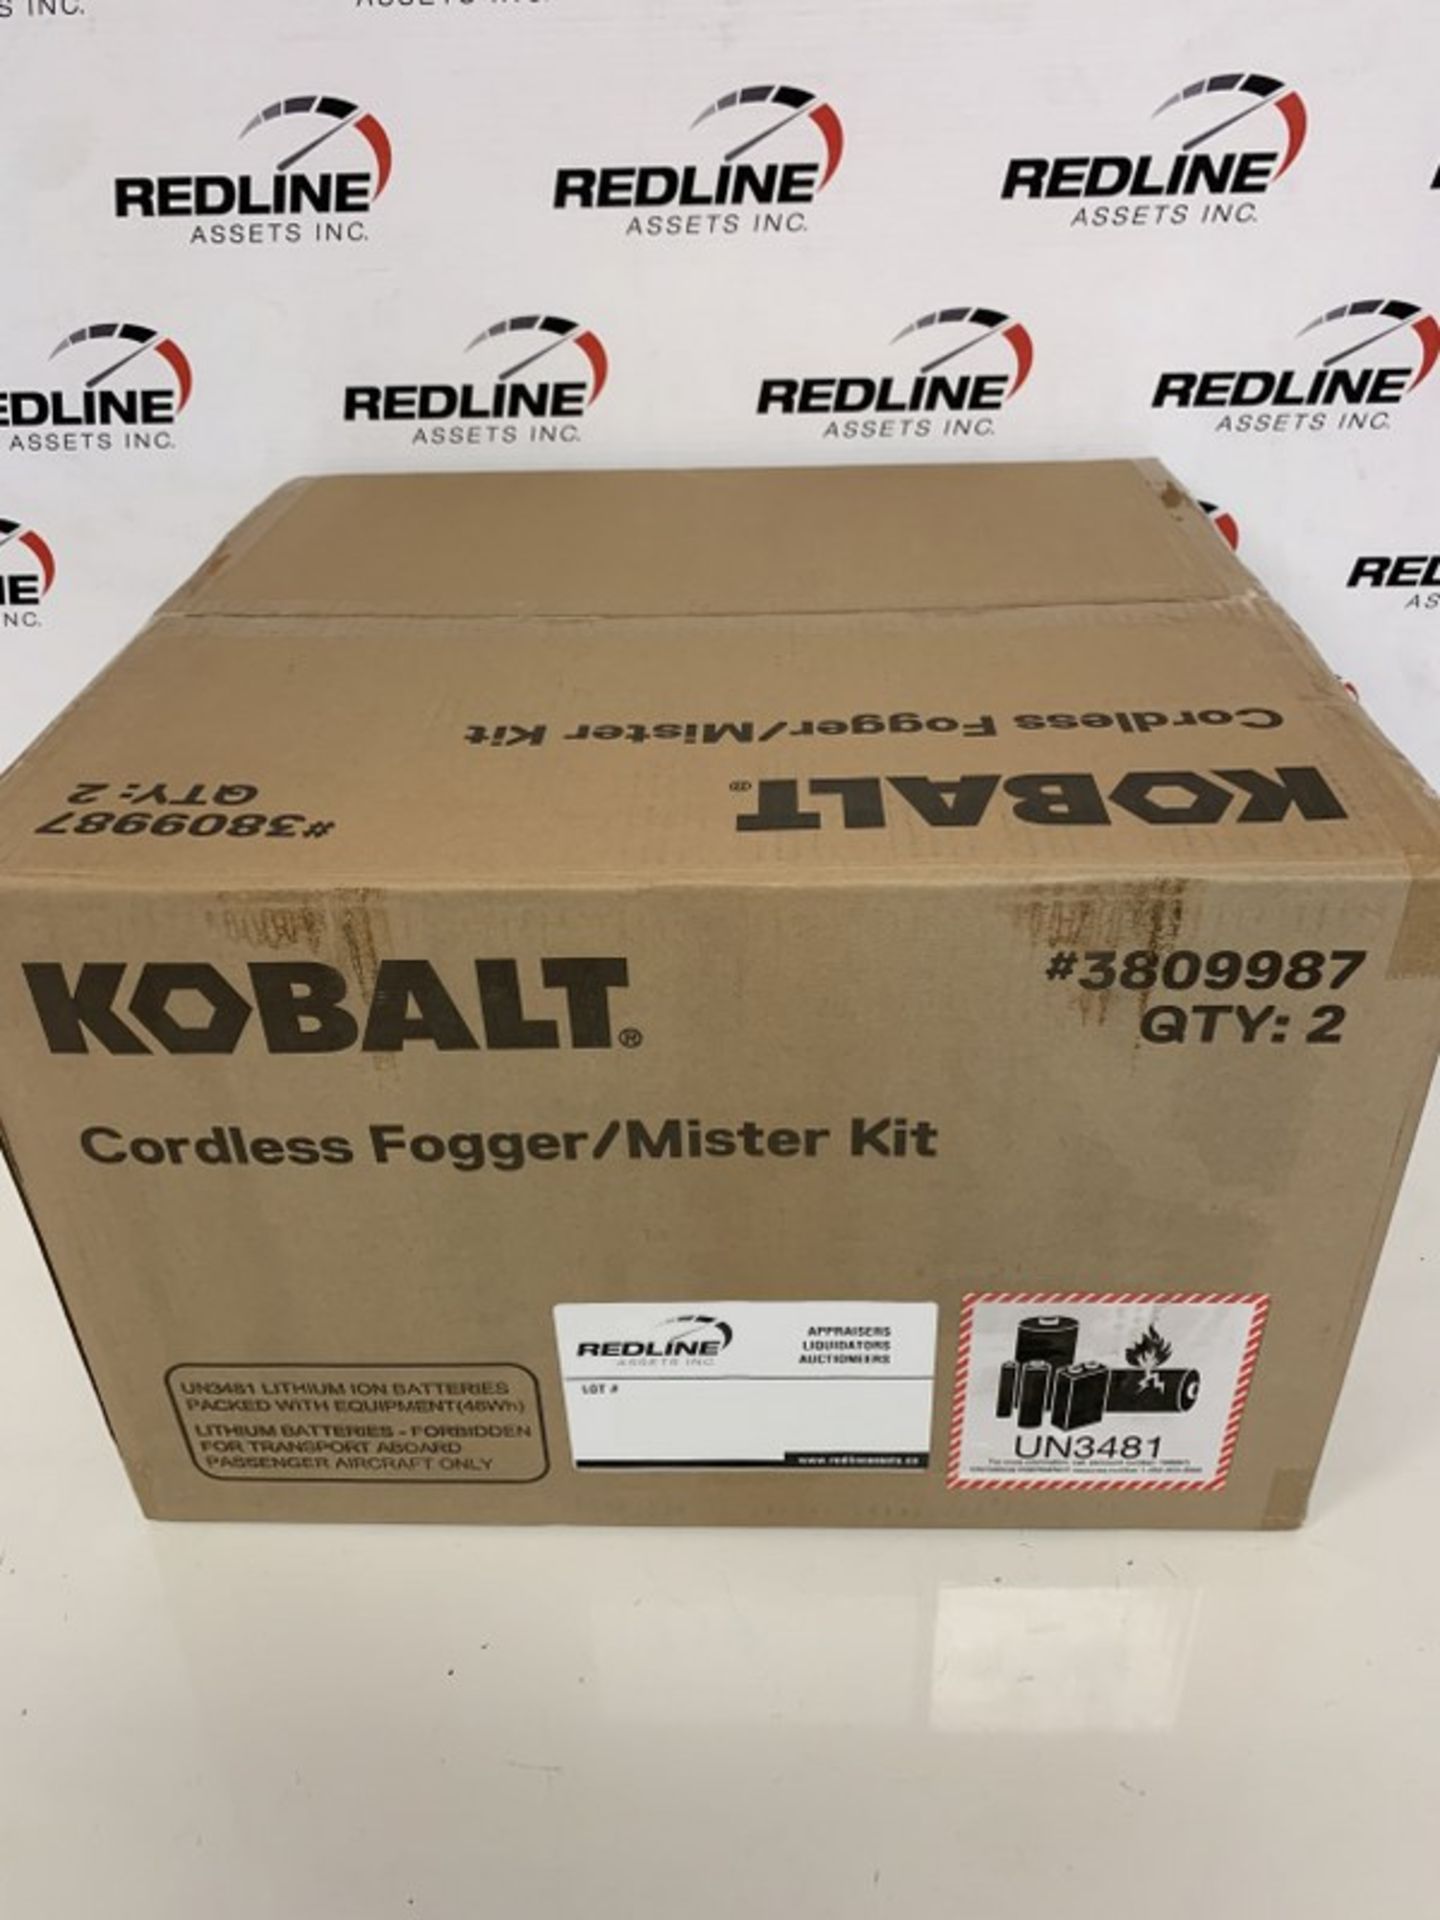 Kobalt - Cordless Fogger/Mister Kit - Image 2 of 2